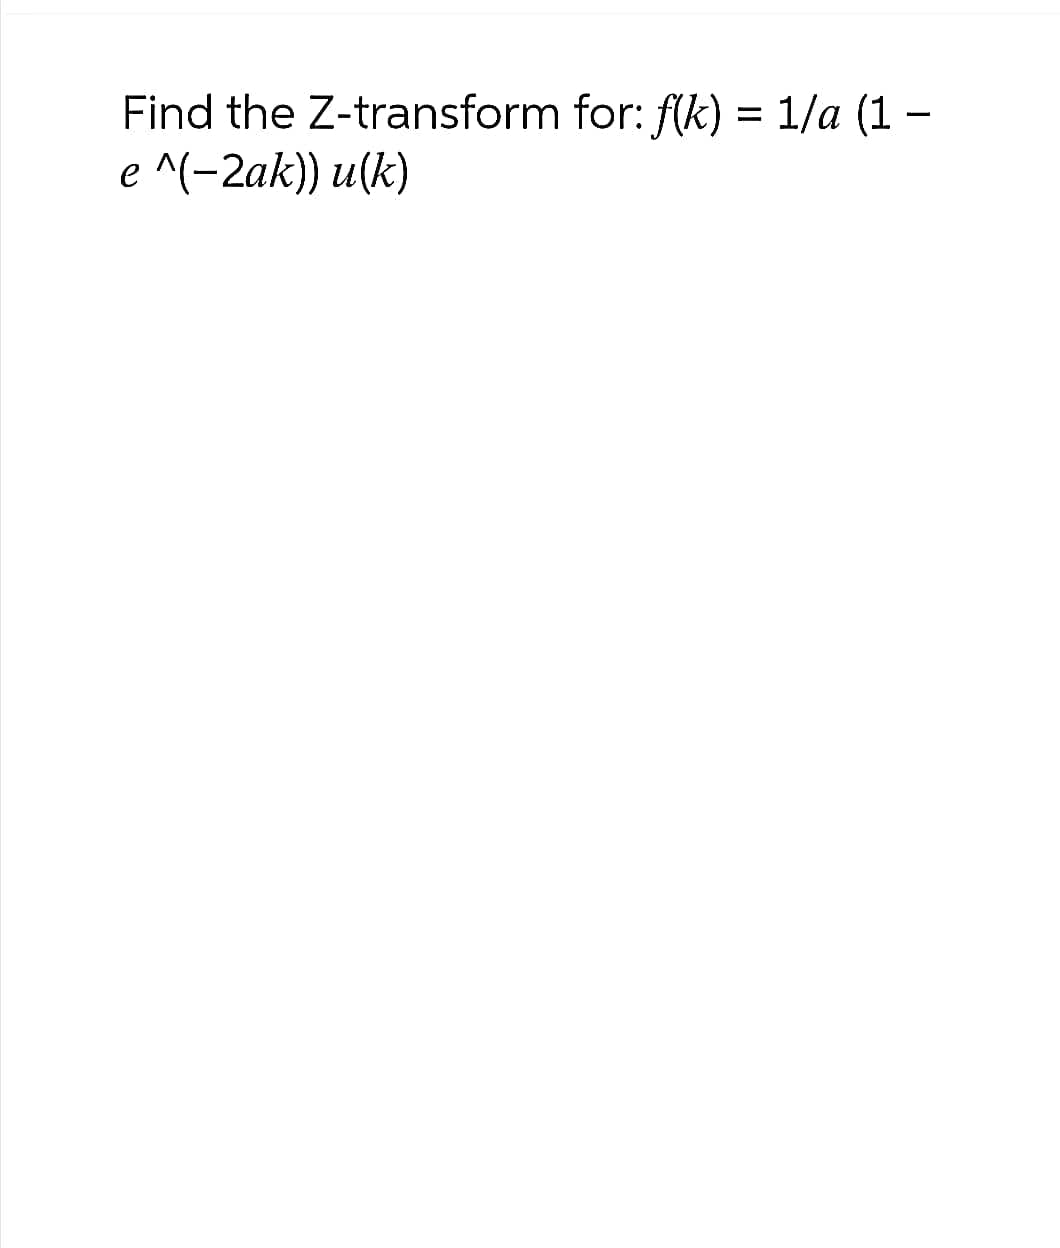 Find the Z-transform for: f(k) = 1/a (1 -
e ^(−2ak)) u(k)